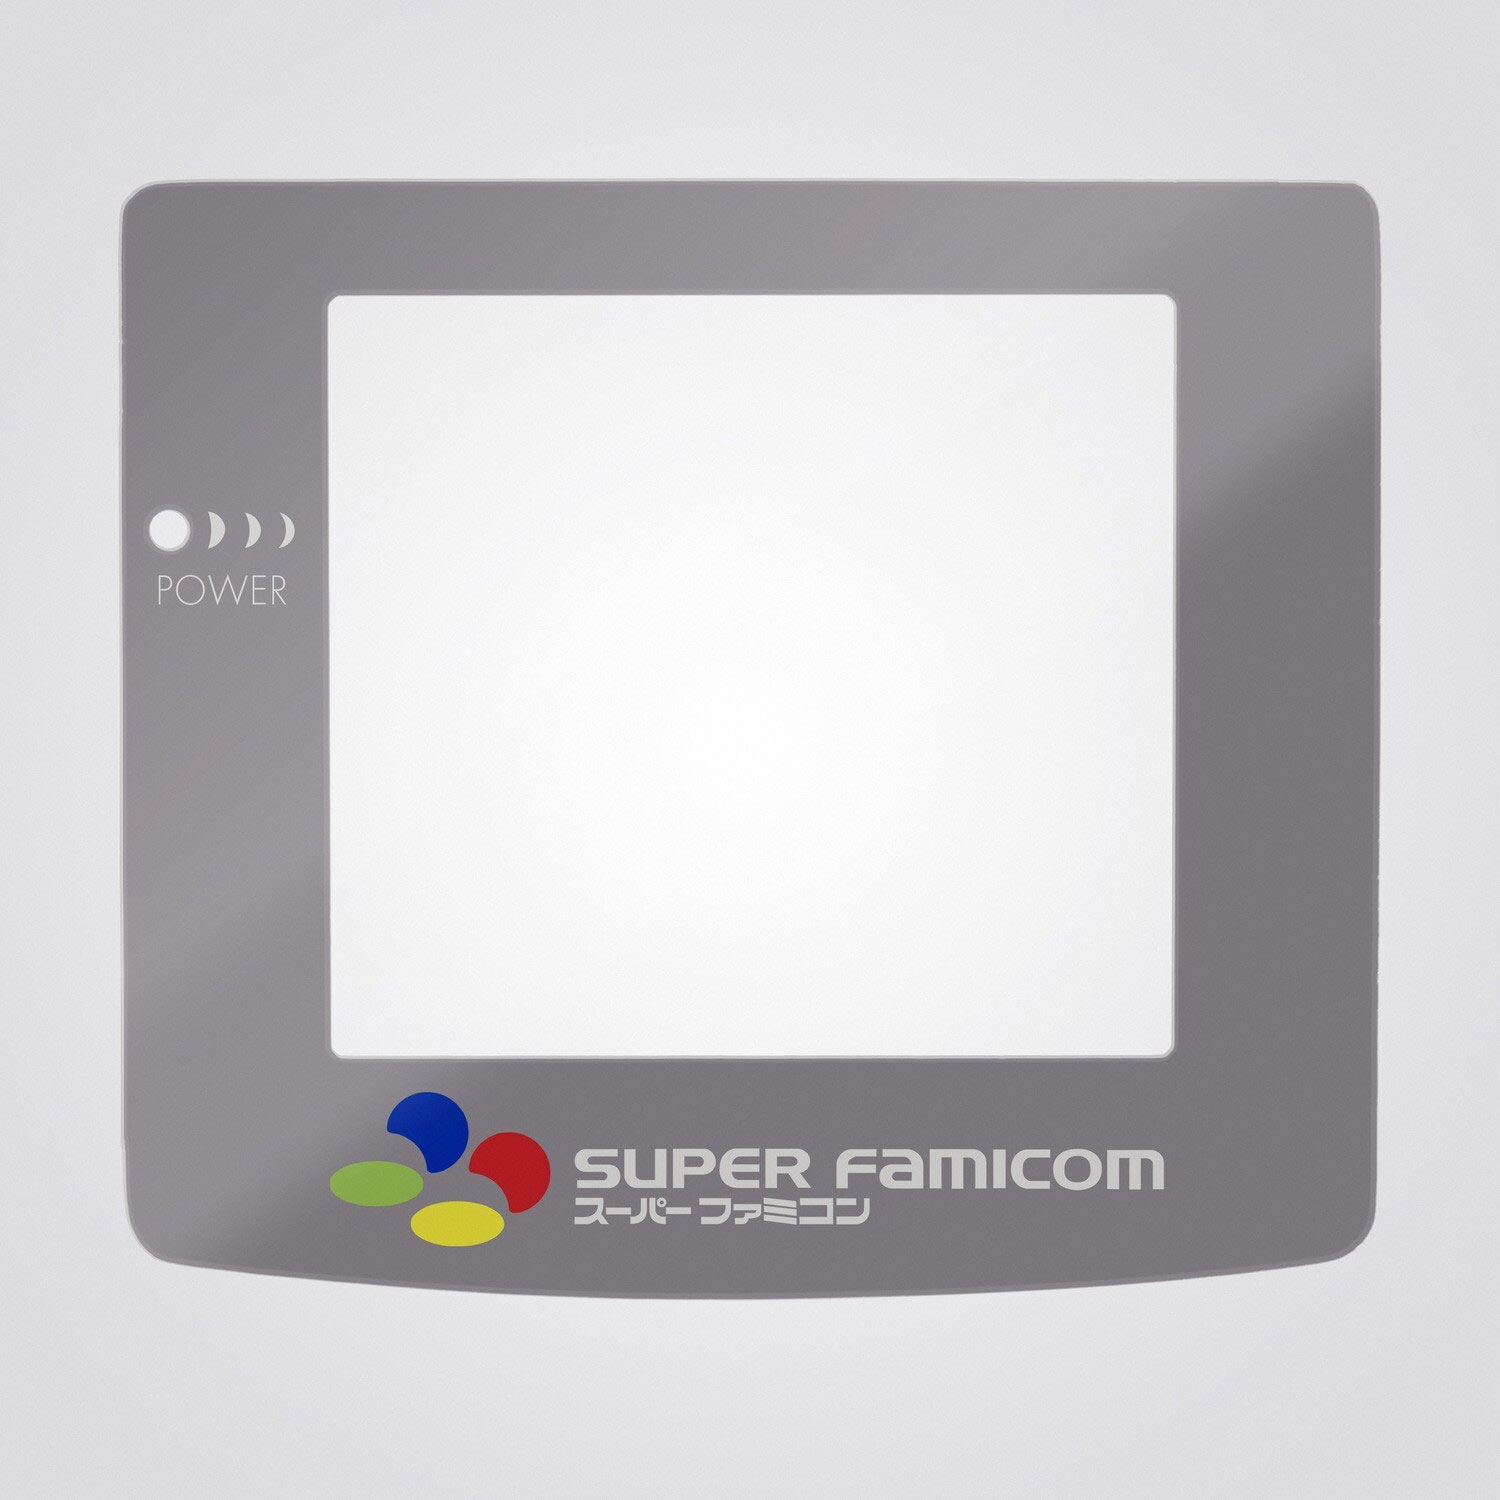 Game Boy Color glass disc (Super Famicom)